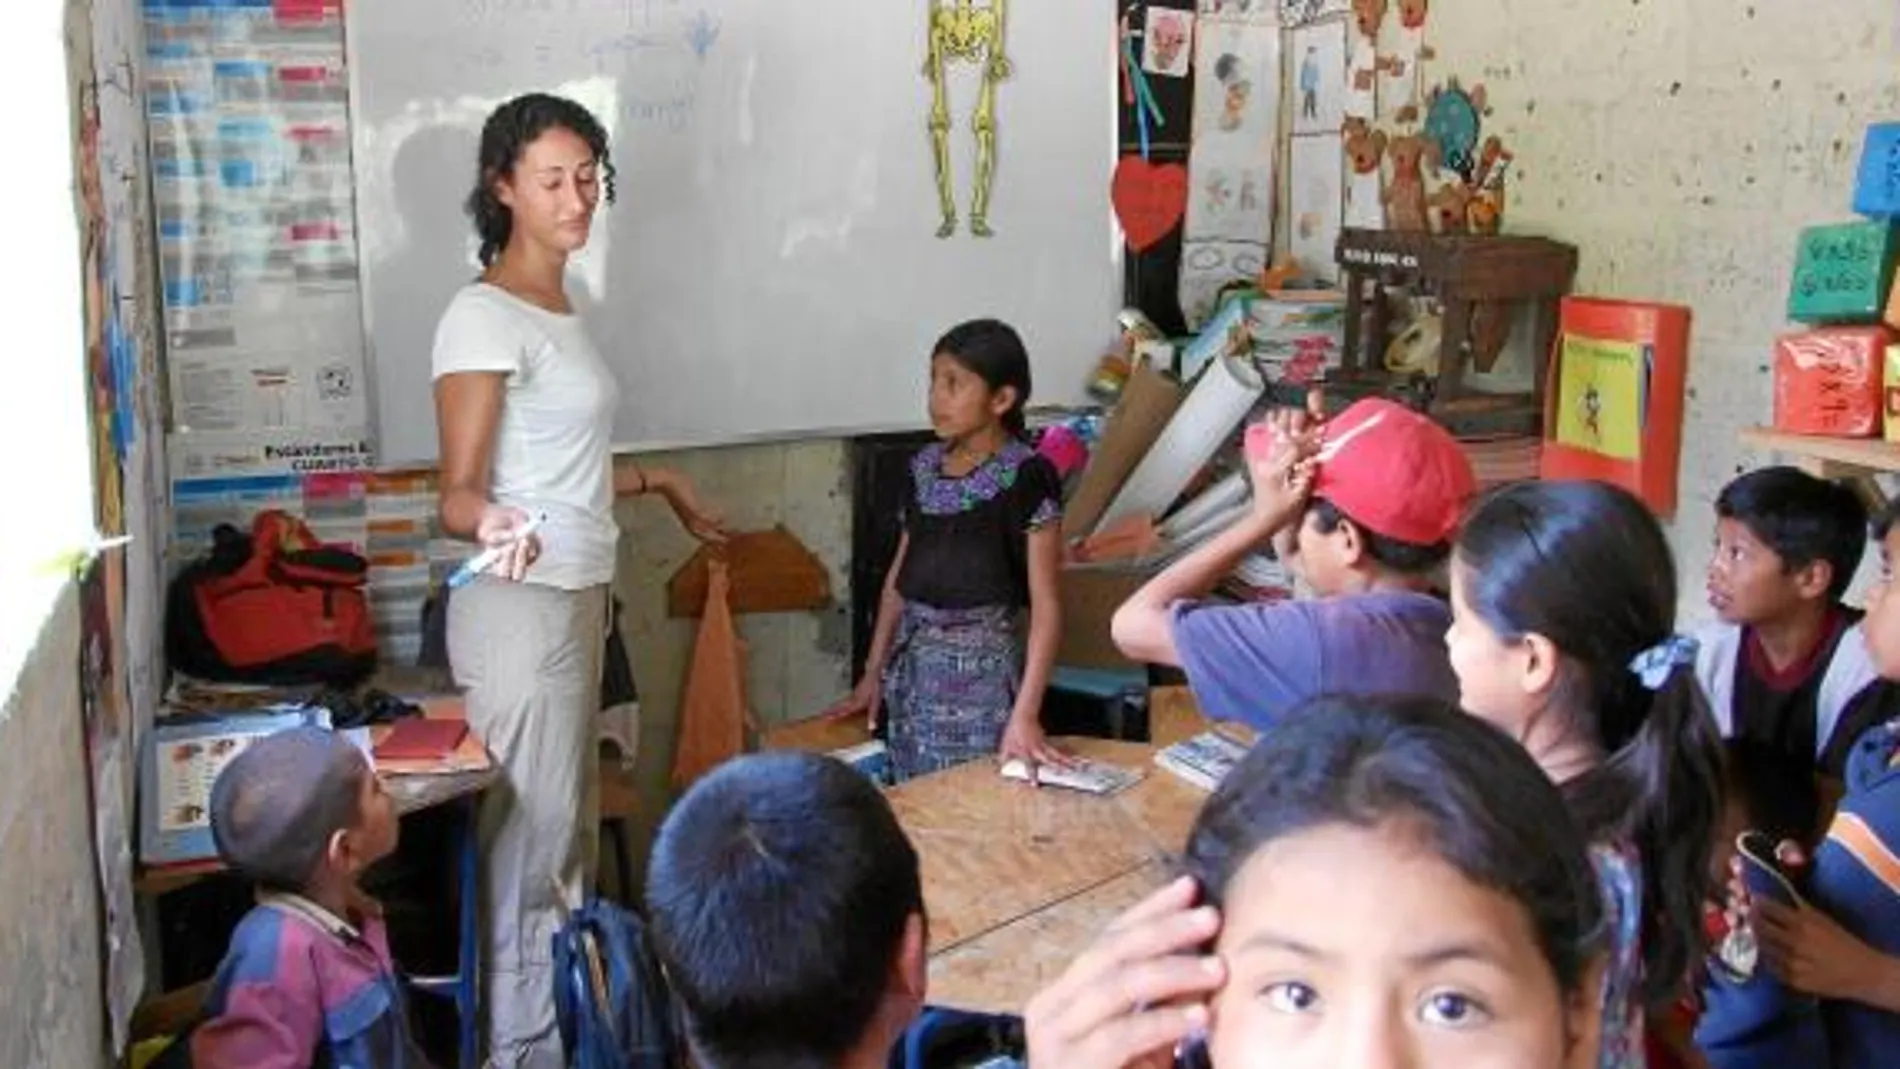 Cristina, una voluntaria española, enseña inglés a unos niños durante el verano de 2010 en Guatemala.